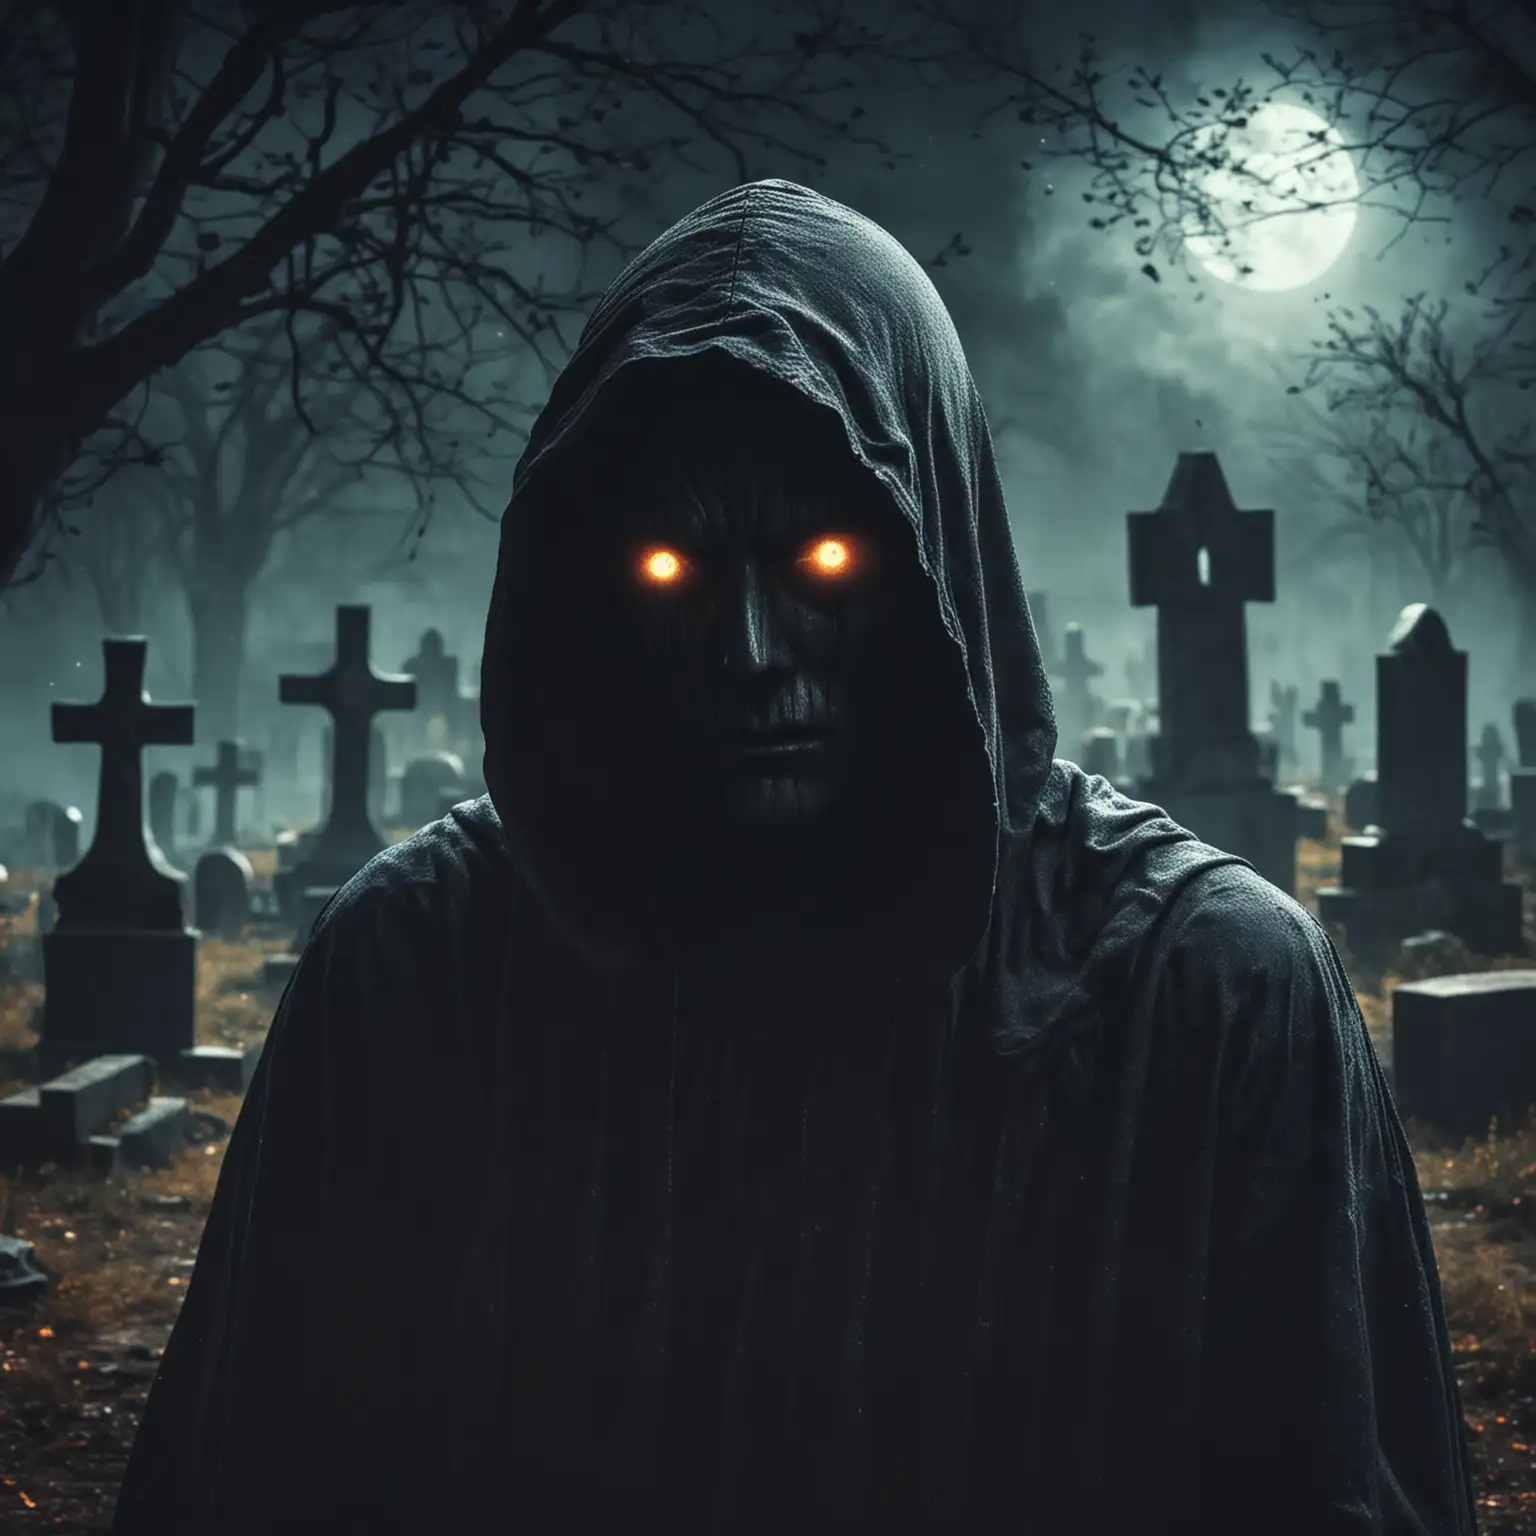 тайнствен образ с качулка без лице със светещи очи на гробищен фон